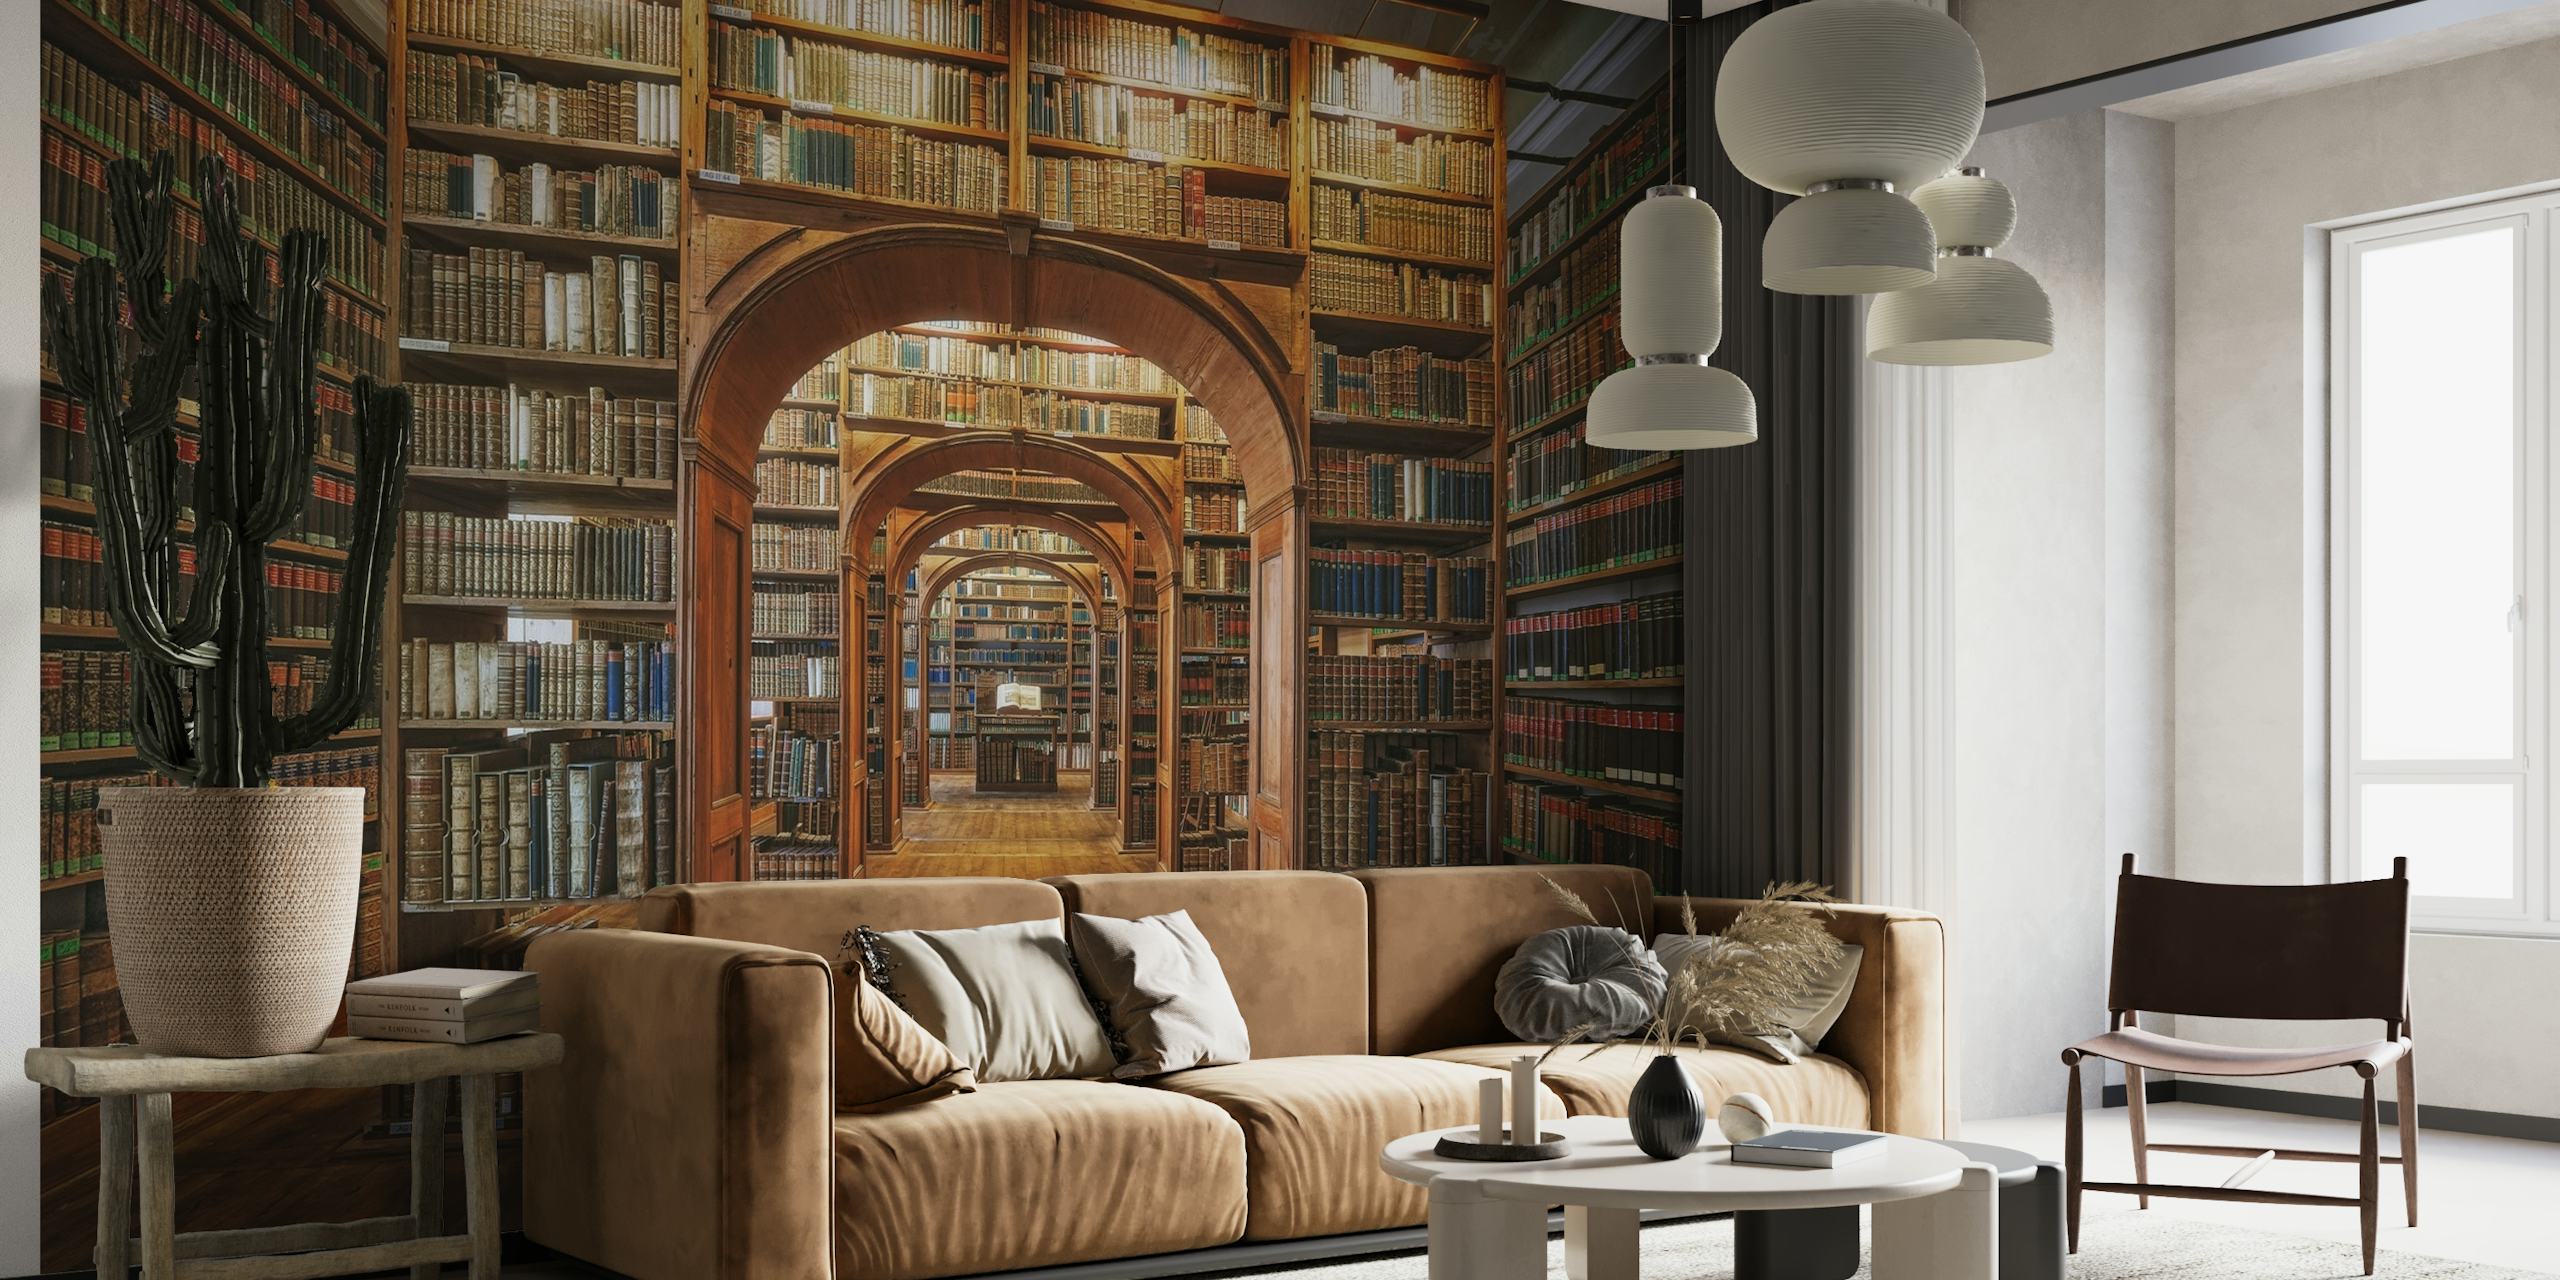 Wandgemälde der Oberlausitzer Bibliothek der Wissenschaften mit Bücherregalen und gewölbtem Durchgang